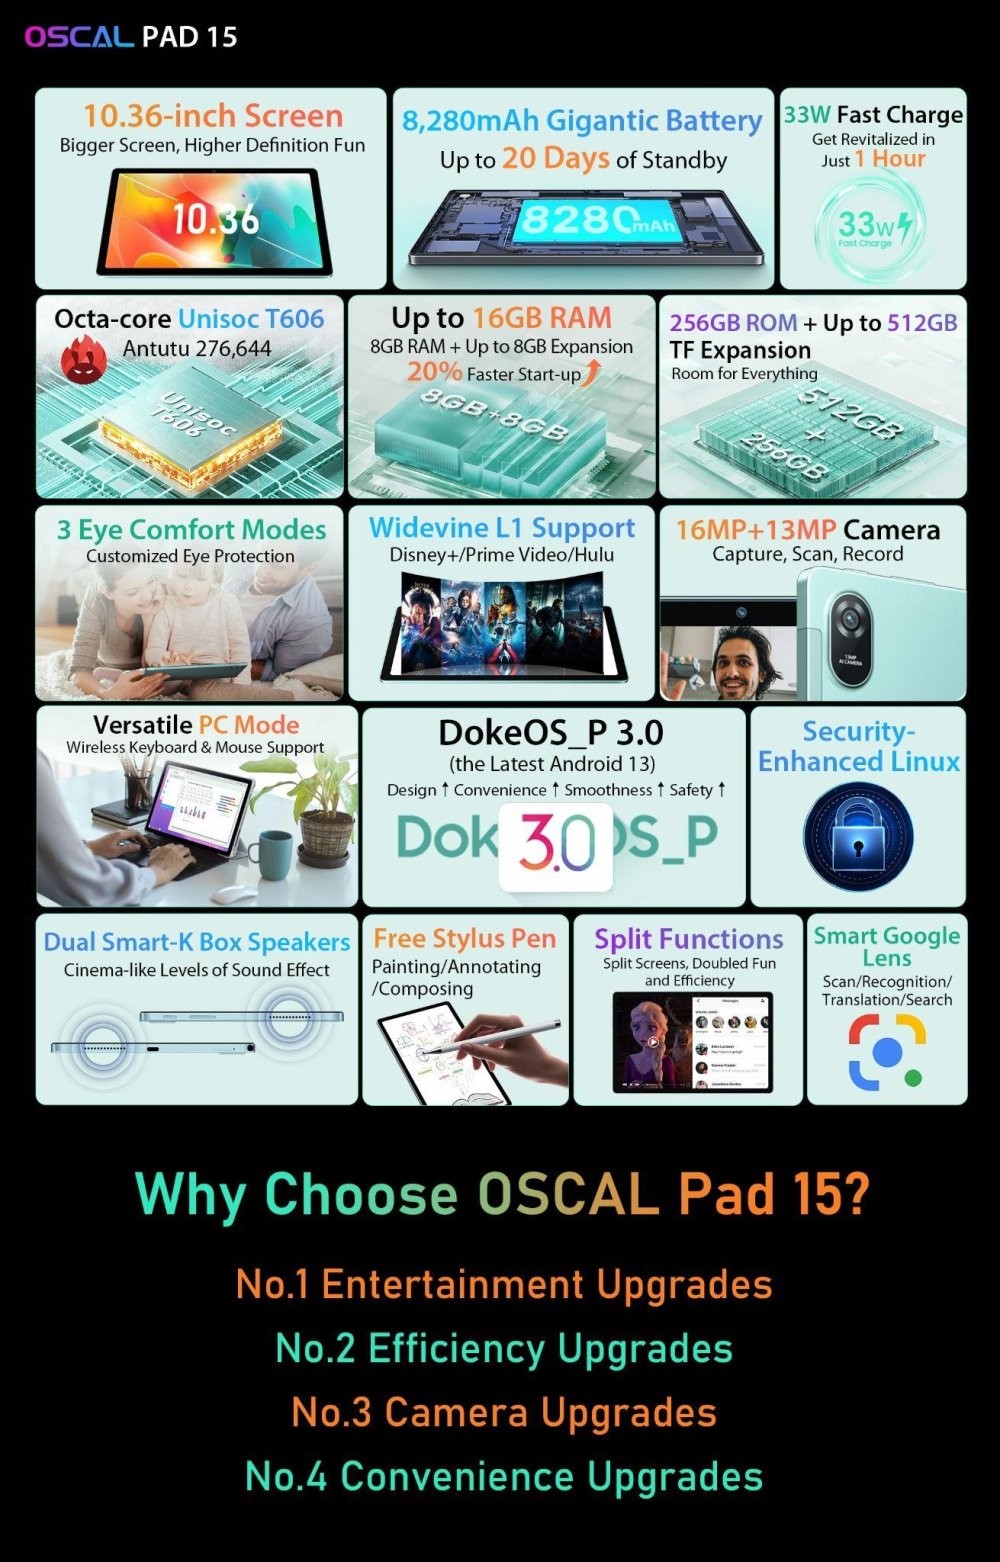 Экран больше, производительность выше, цена ниже: флагманский планшет Pad 15 от Oscal